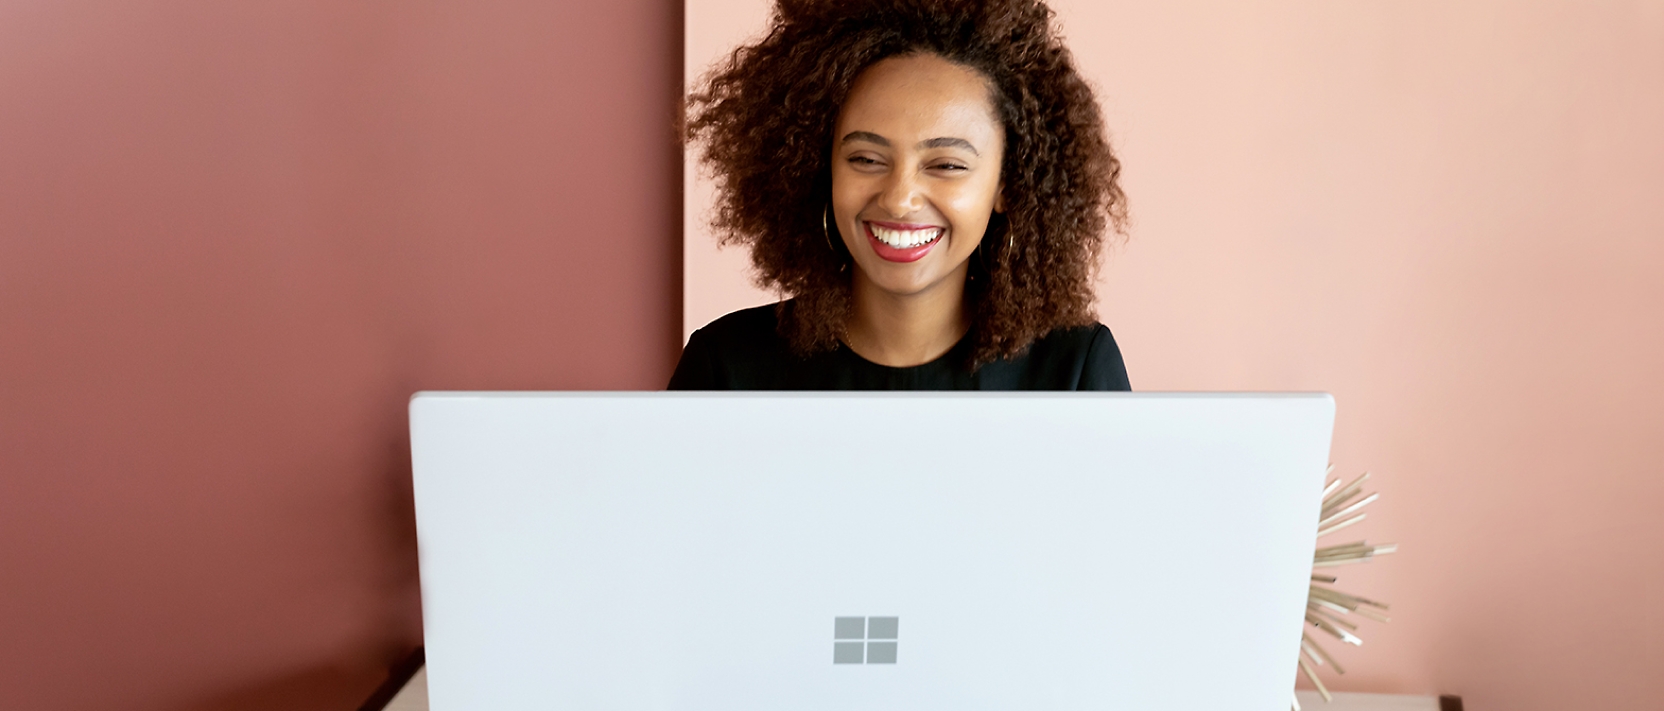 Μια γυναίκα χαμογελάει ενώ εργάζεται σε έναν φορητό υπολογιστή.